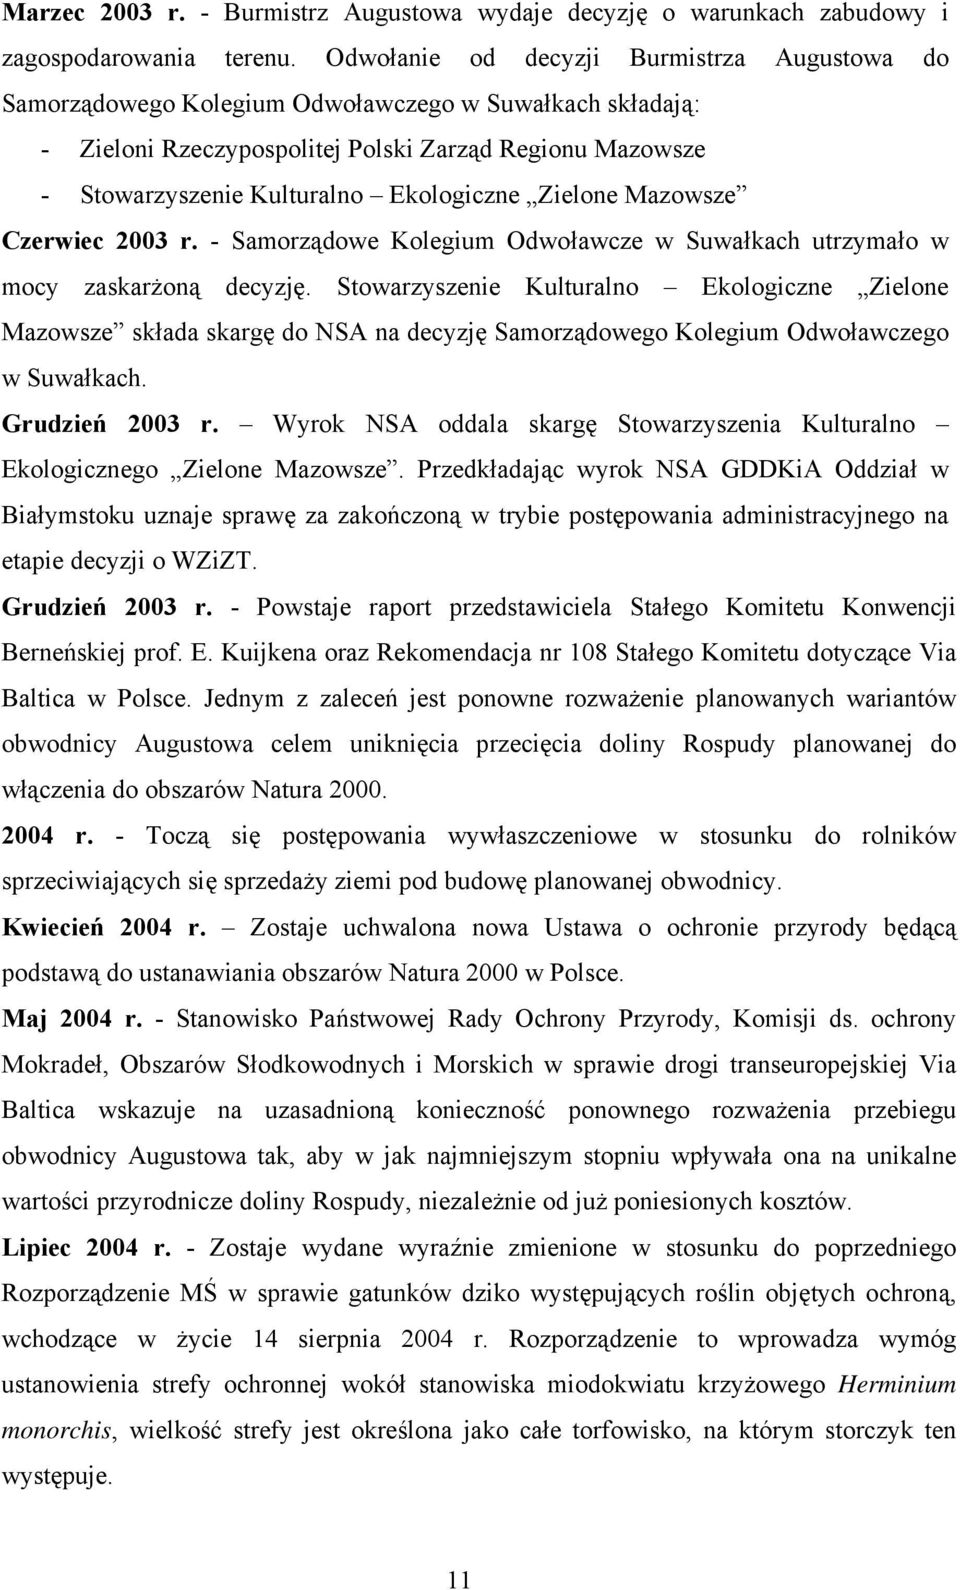 Ekologiczne Zielone Mazowsze Czerwiec 2003 r. - Samorządowe Kolegium Odwoławcze w Suwałkach utrzymało w mocy zaskarżoną decyzję.